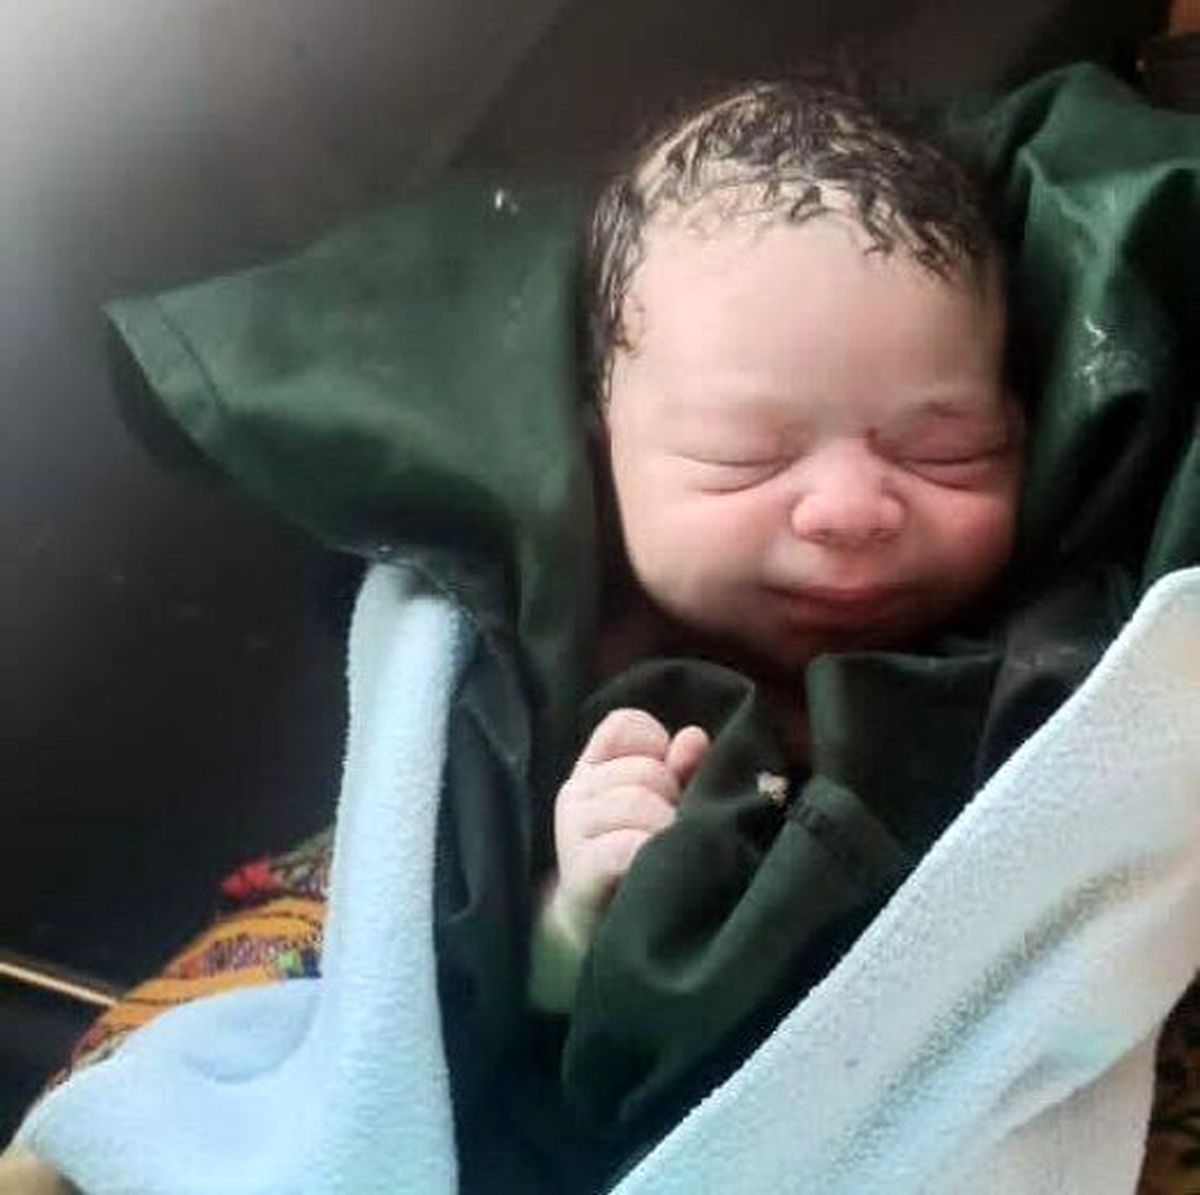 فوری: پیدا شدن نوزادی دیگر در تهران|تراژدی تلخ رهایی کودک